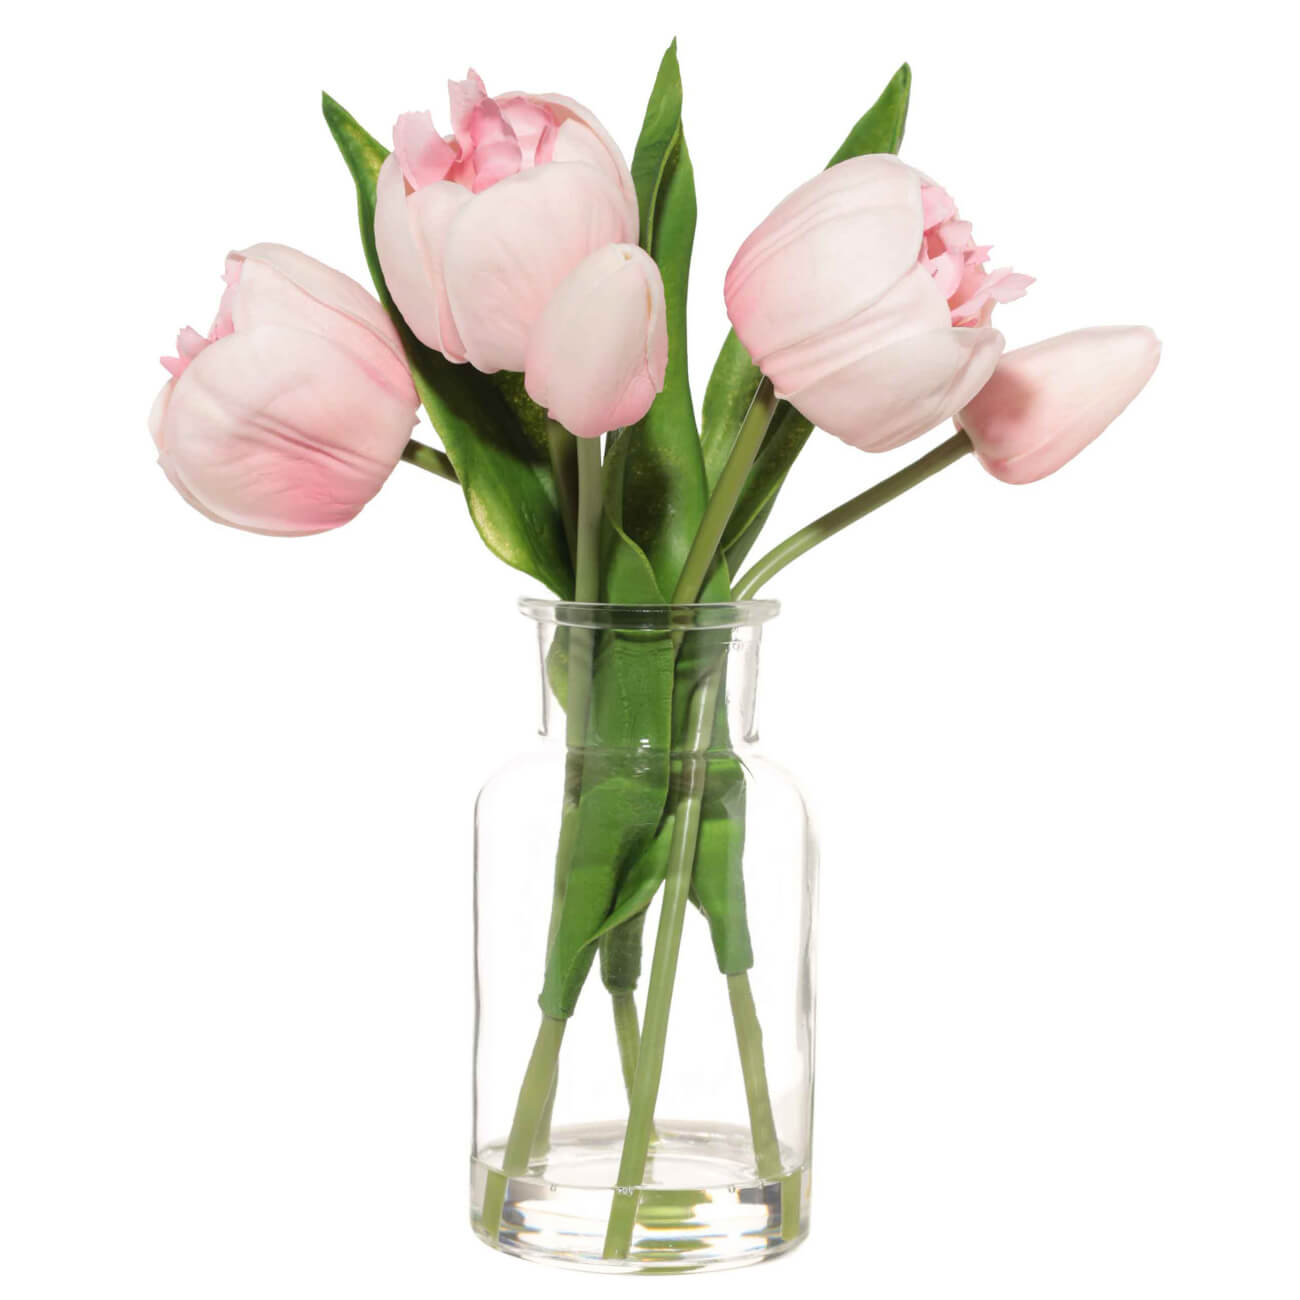 Букет искусственный, 21 см, в вазе, полиуретан/стекло, Розовые тюльпаны, Tulip garden букет с лавандой снег в париже